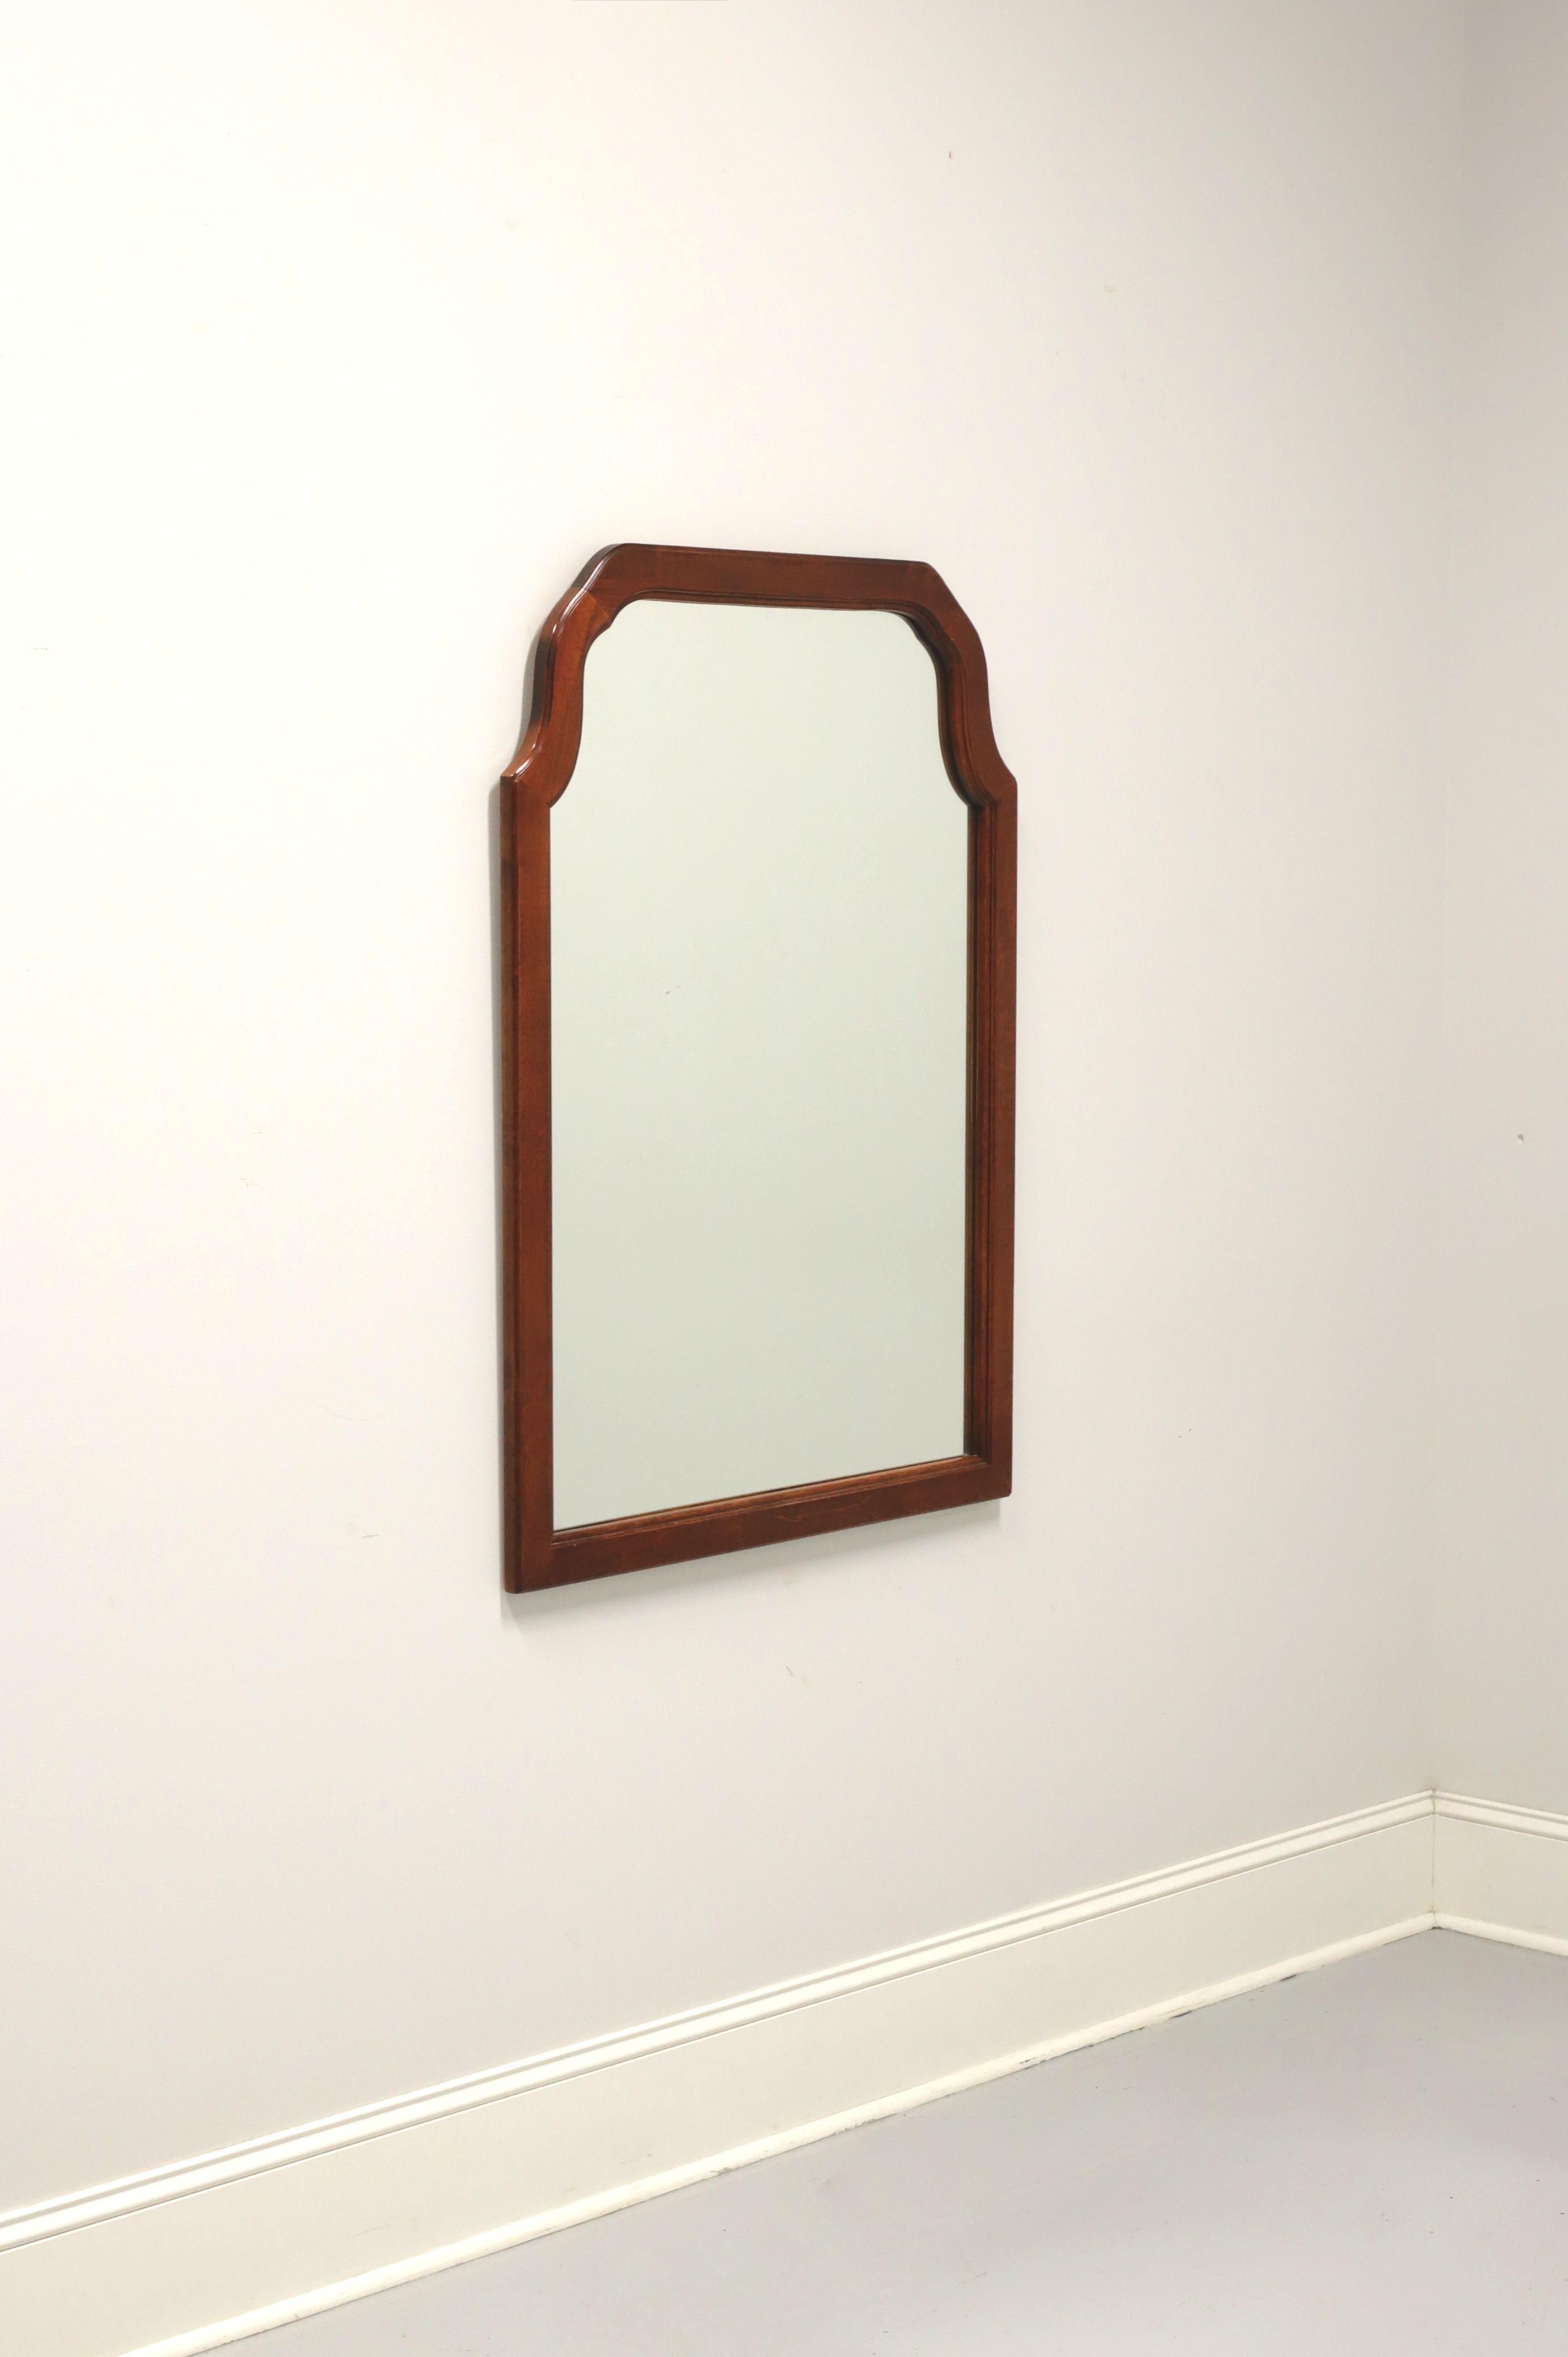 Un miroir mural de style traditionnel, sans marque, de qualité similaire à Craftique ou Henredon. Verre miroir et cadre en cerisier avec dessus plat et arqué. Fabriqué aux États-Unis, au milieu du XXe siècle.

Mesures : 31.5 W 1 D 43.5 H, pèse